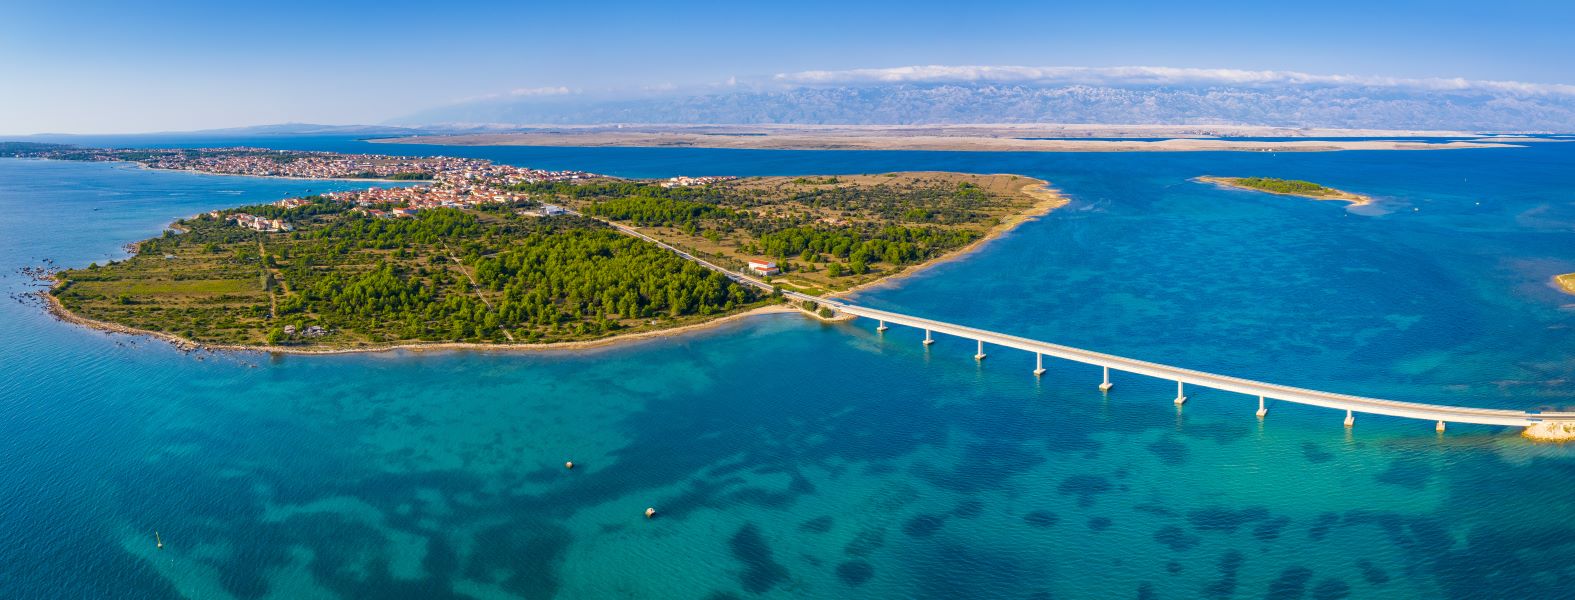 eiland Vir Zadar